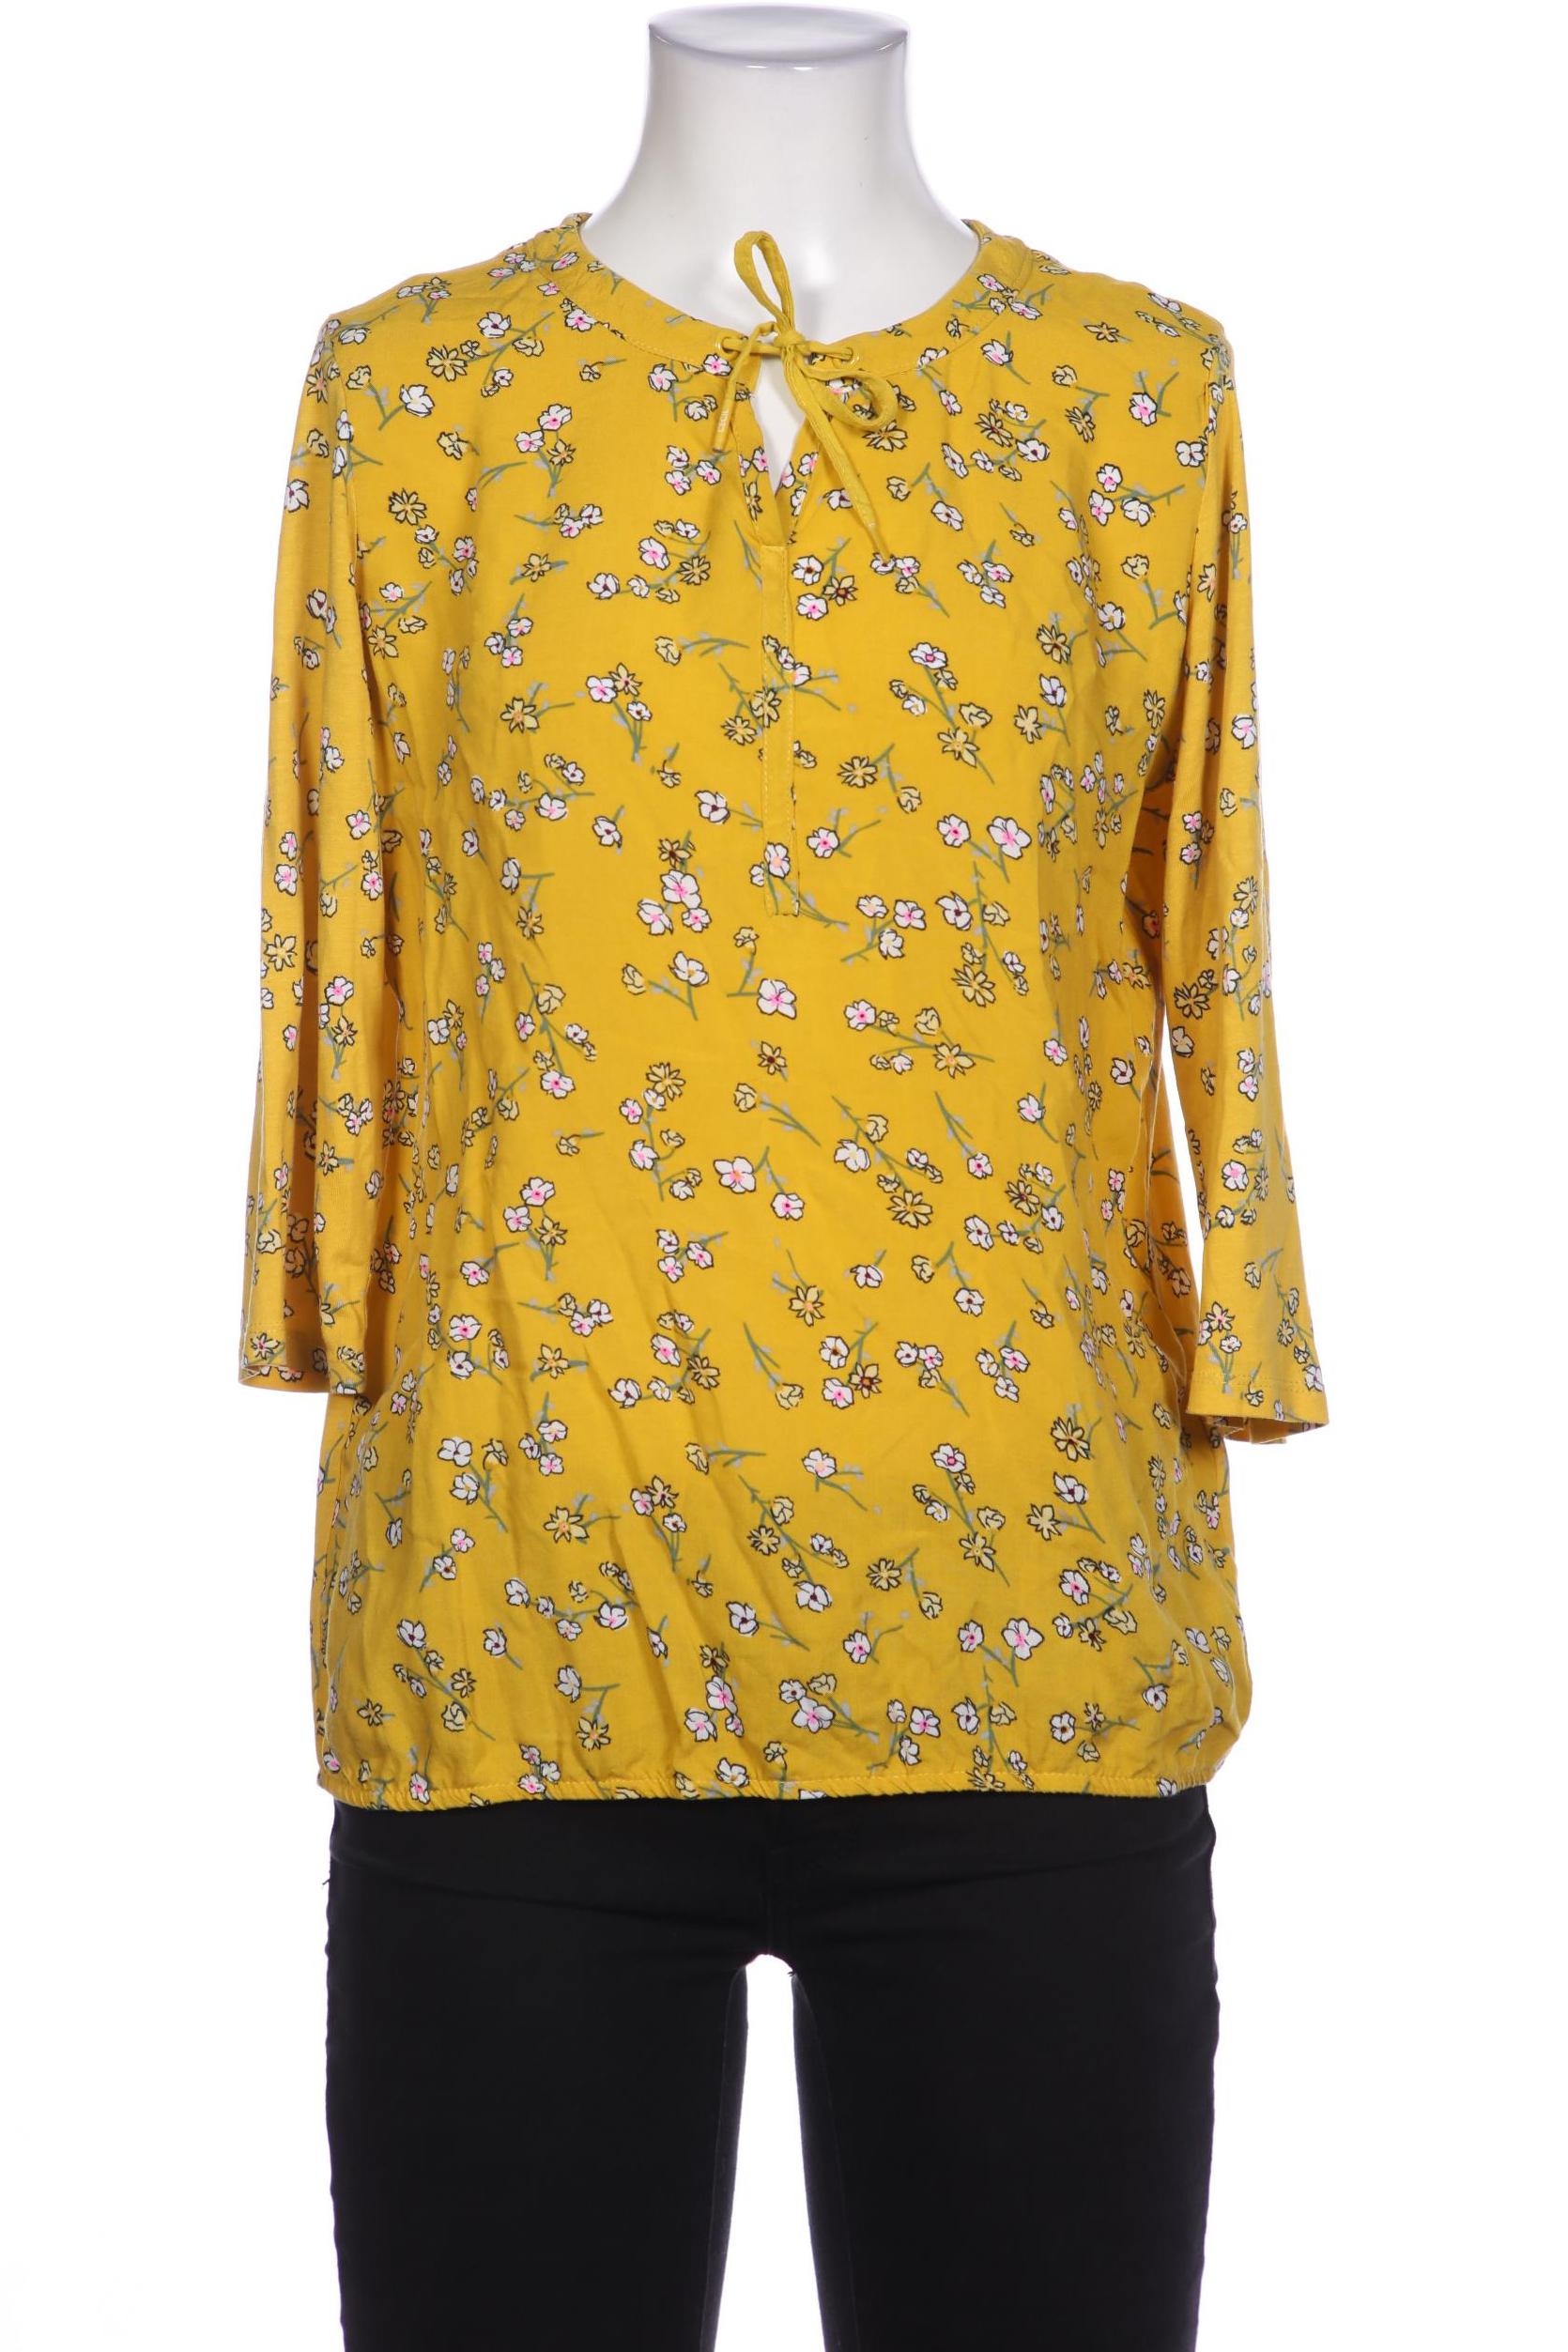 CECIL Damen Langarmshirt, gelb von cecil